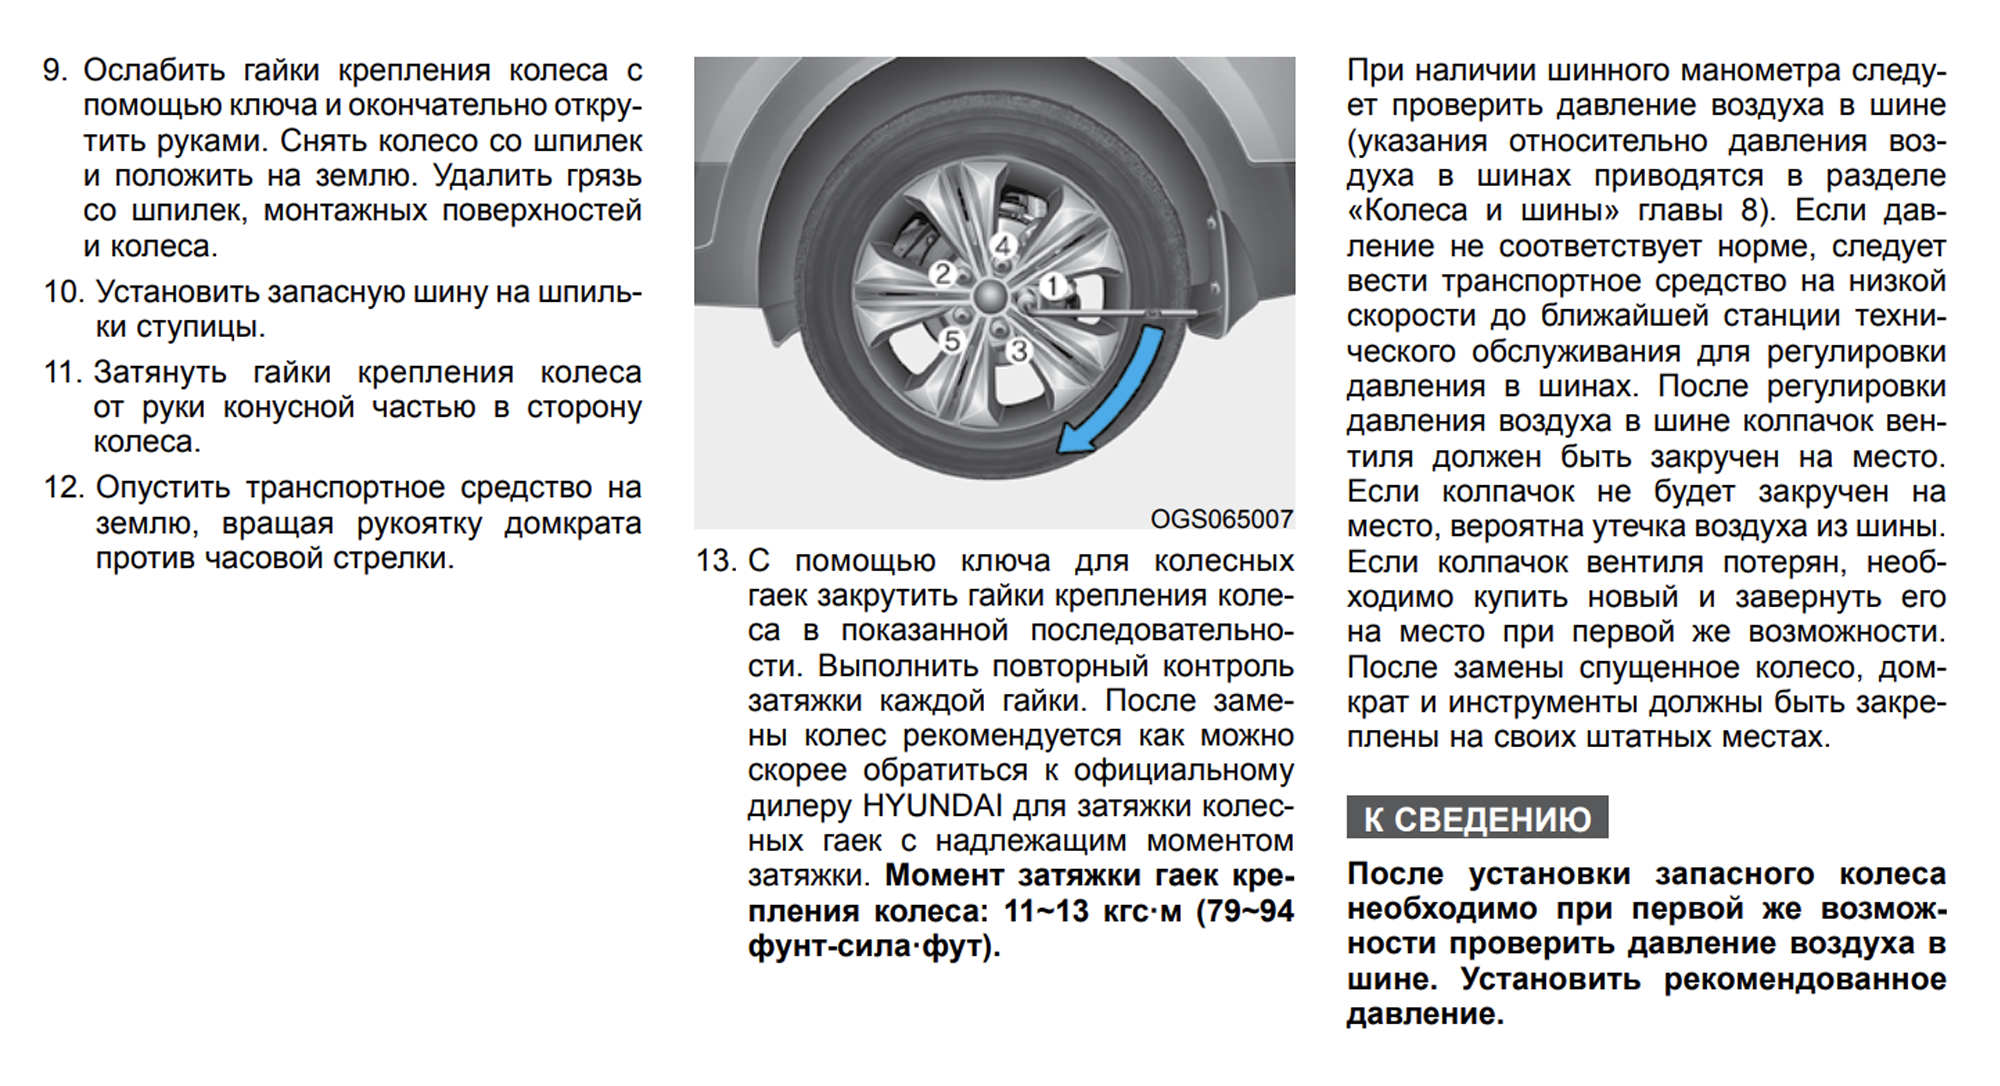 В руководстве по эксплуатации Hyundai Creta указан момент затяжки гаек крепления колеса